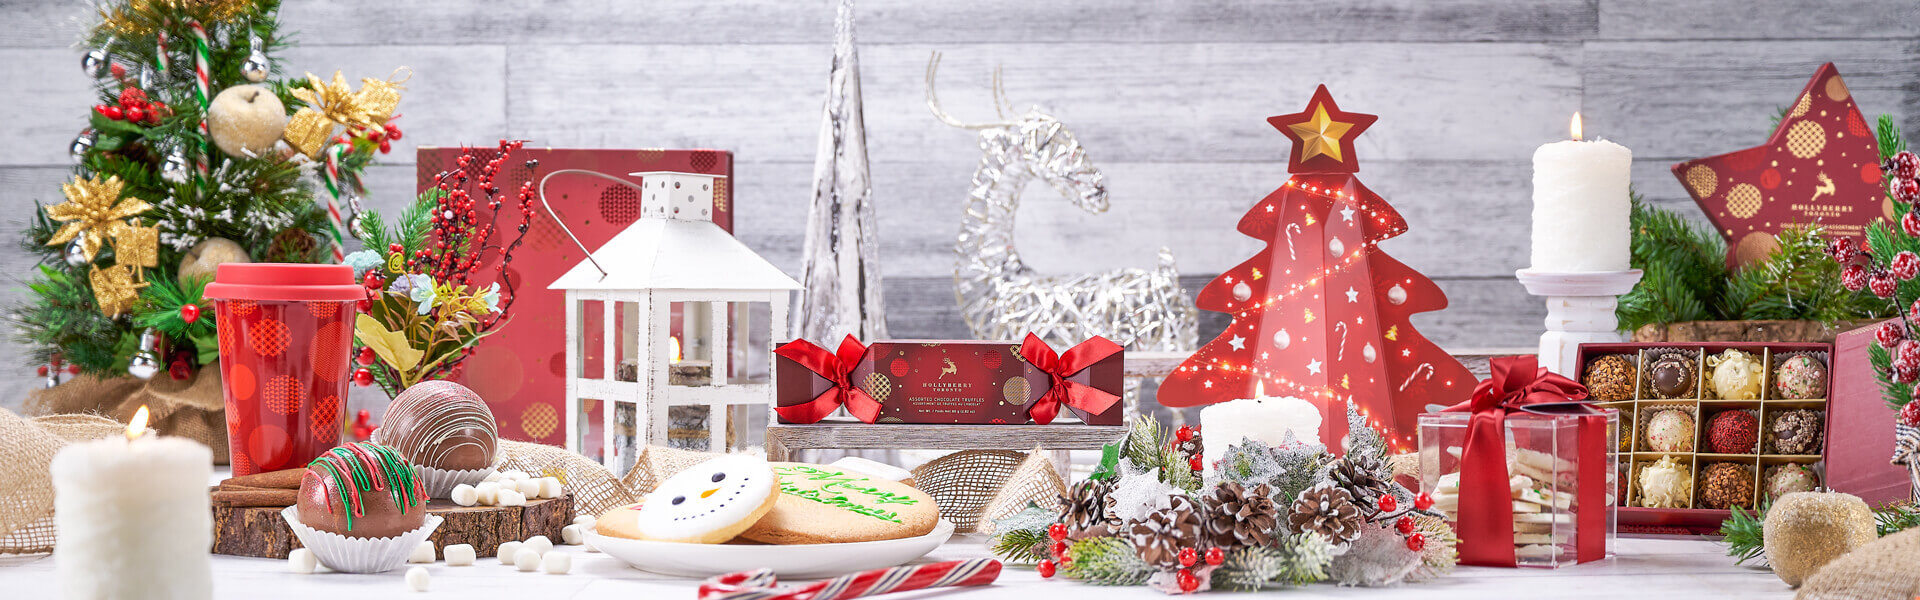 Christmas Gift Baskets North Pole